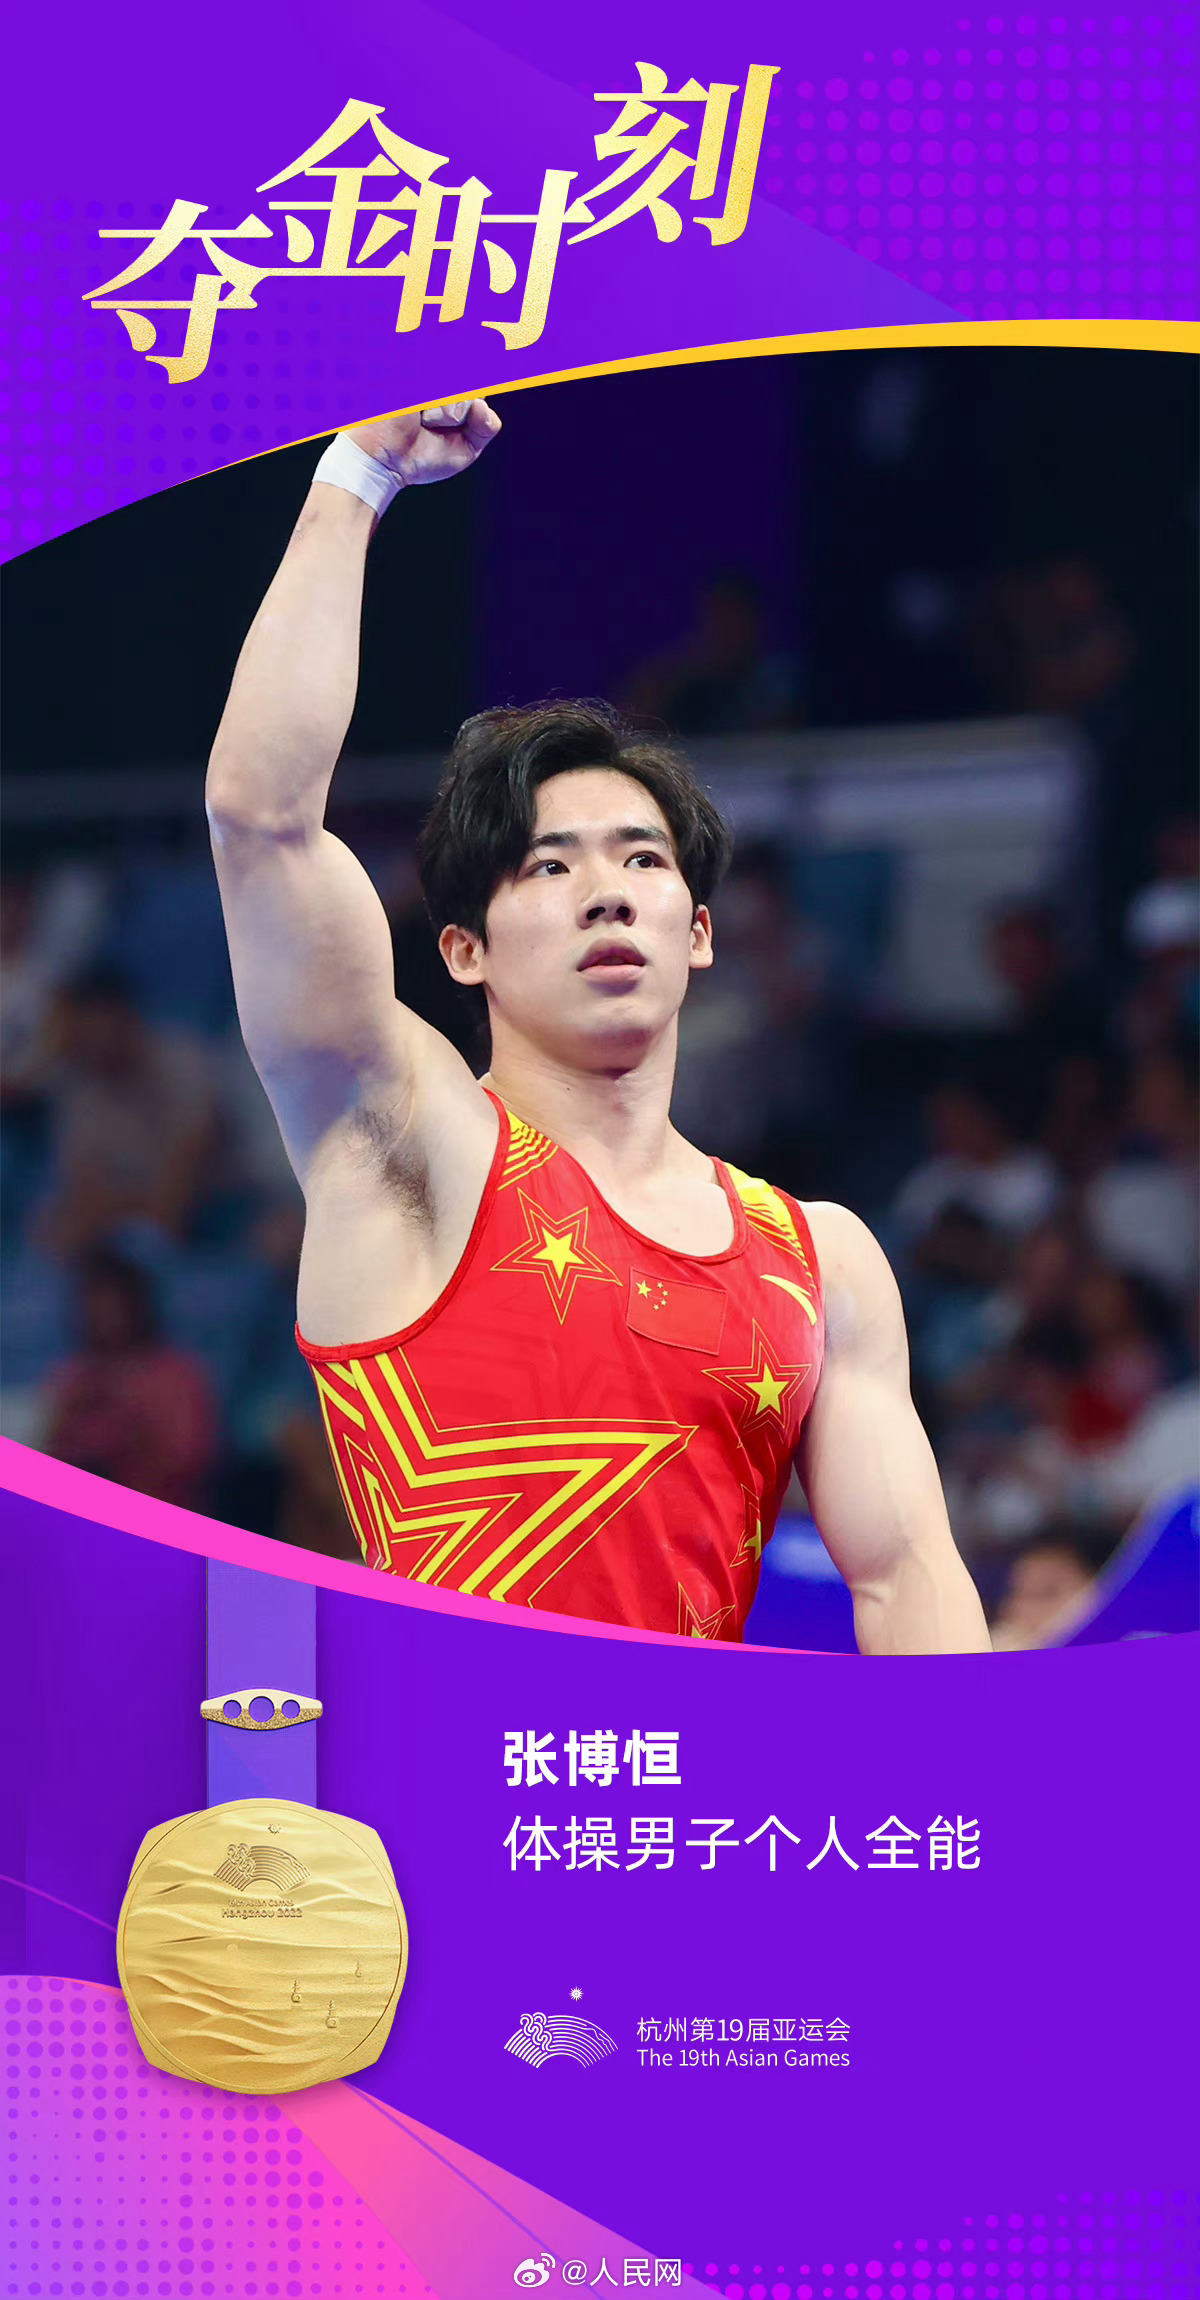 杭州アジア大会の体操男子個人総合で中国の張博恒選手が金メダル